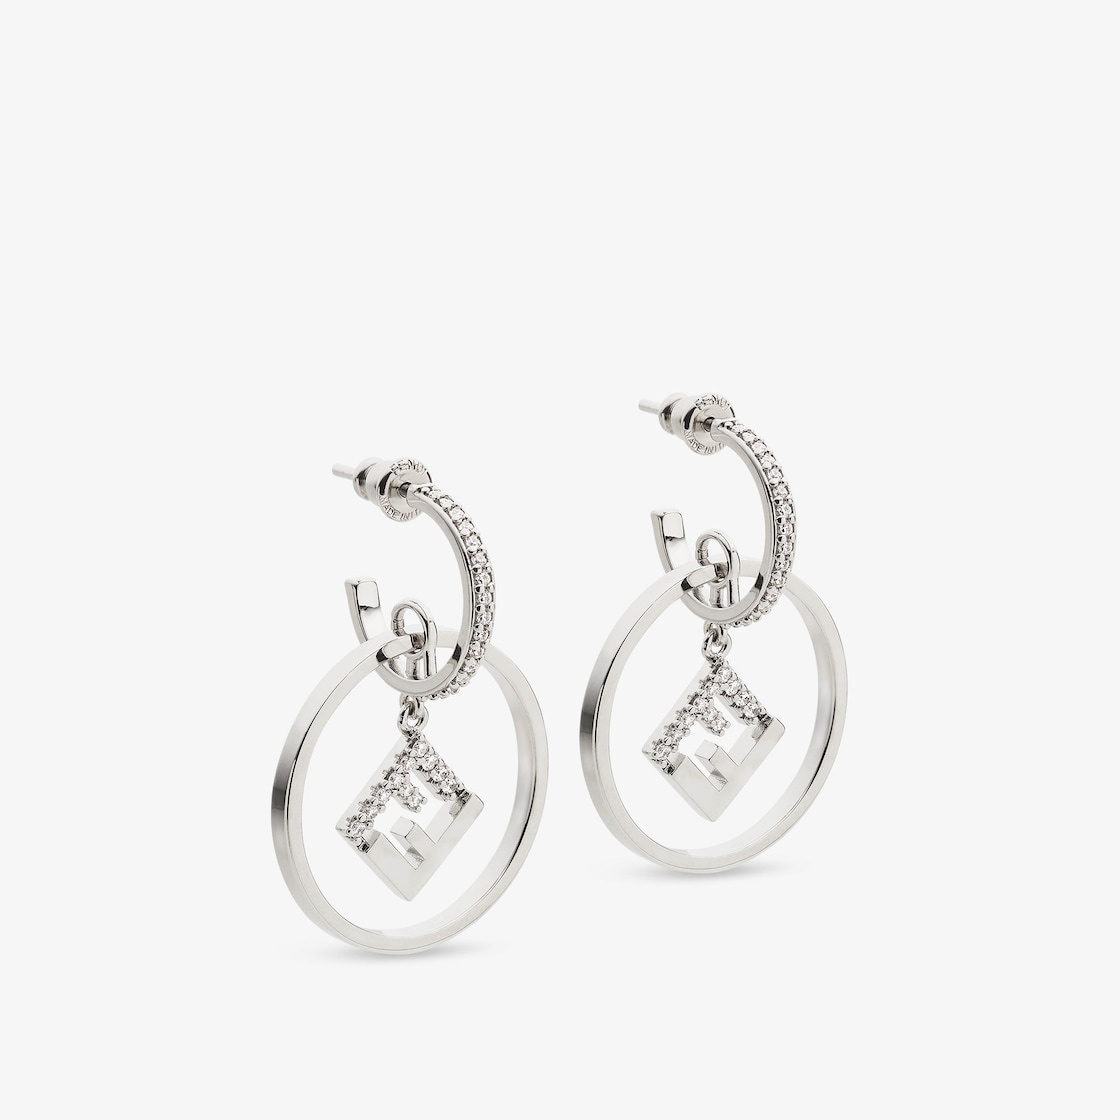 Forever Fendi earrings - 1